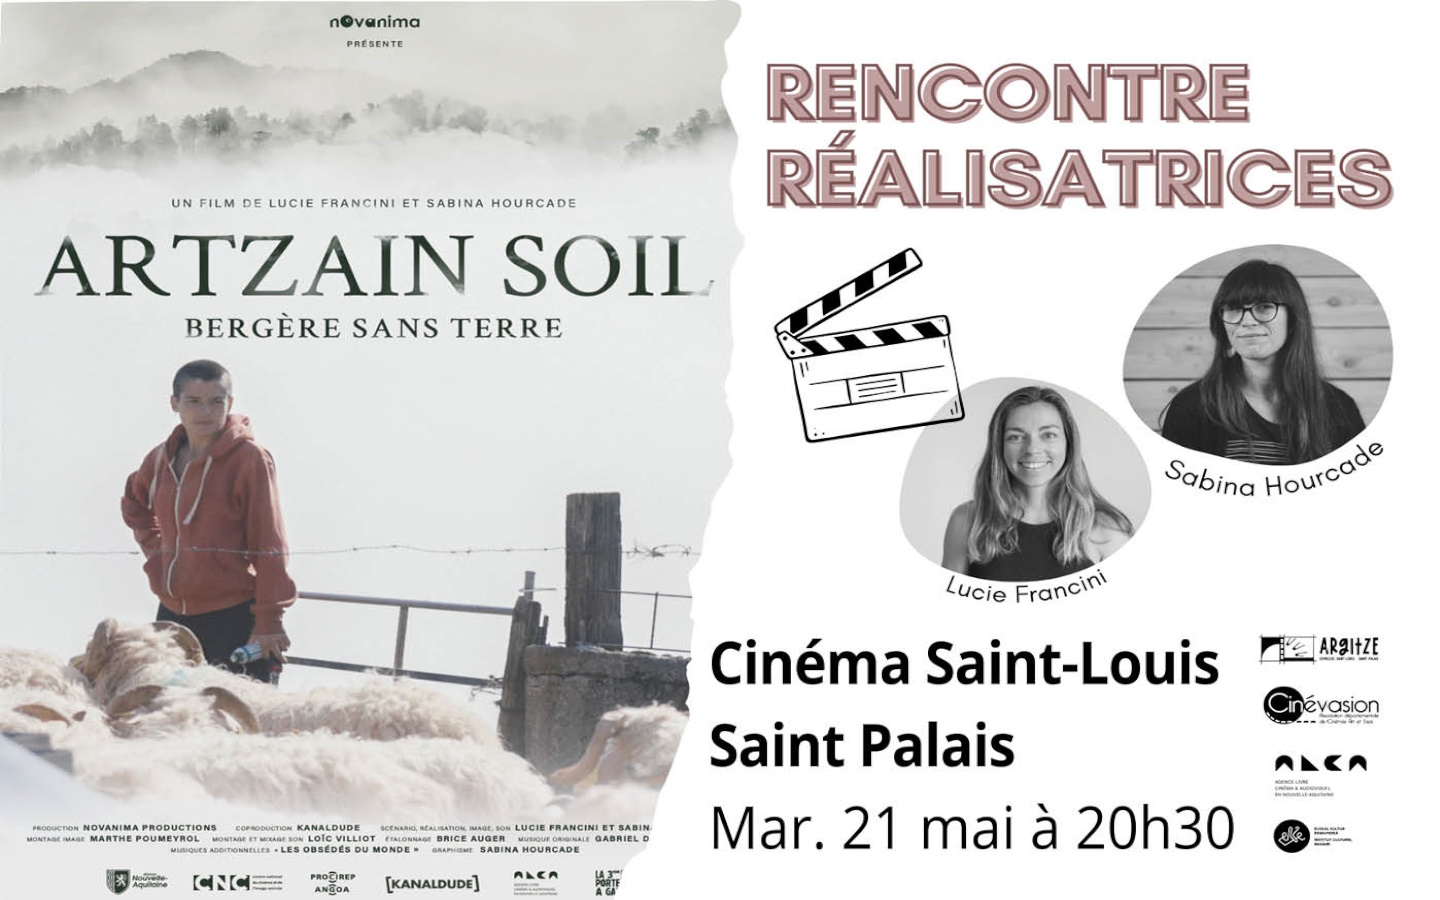 Ciné-rencontre réalisatrices projection du film "Artzain Soil"